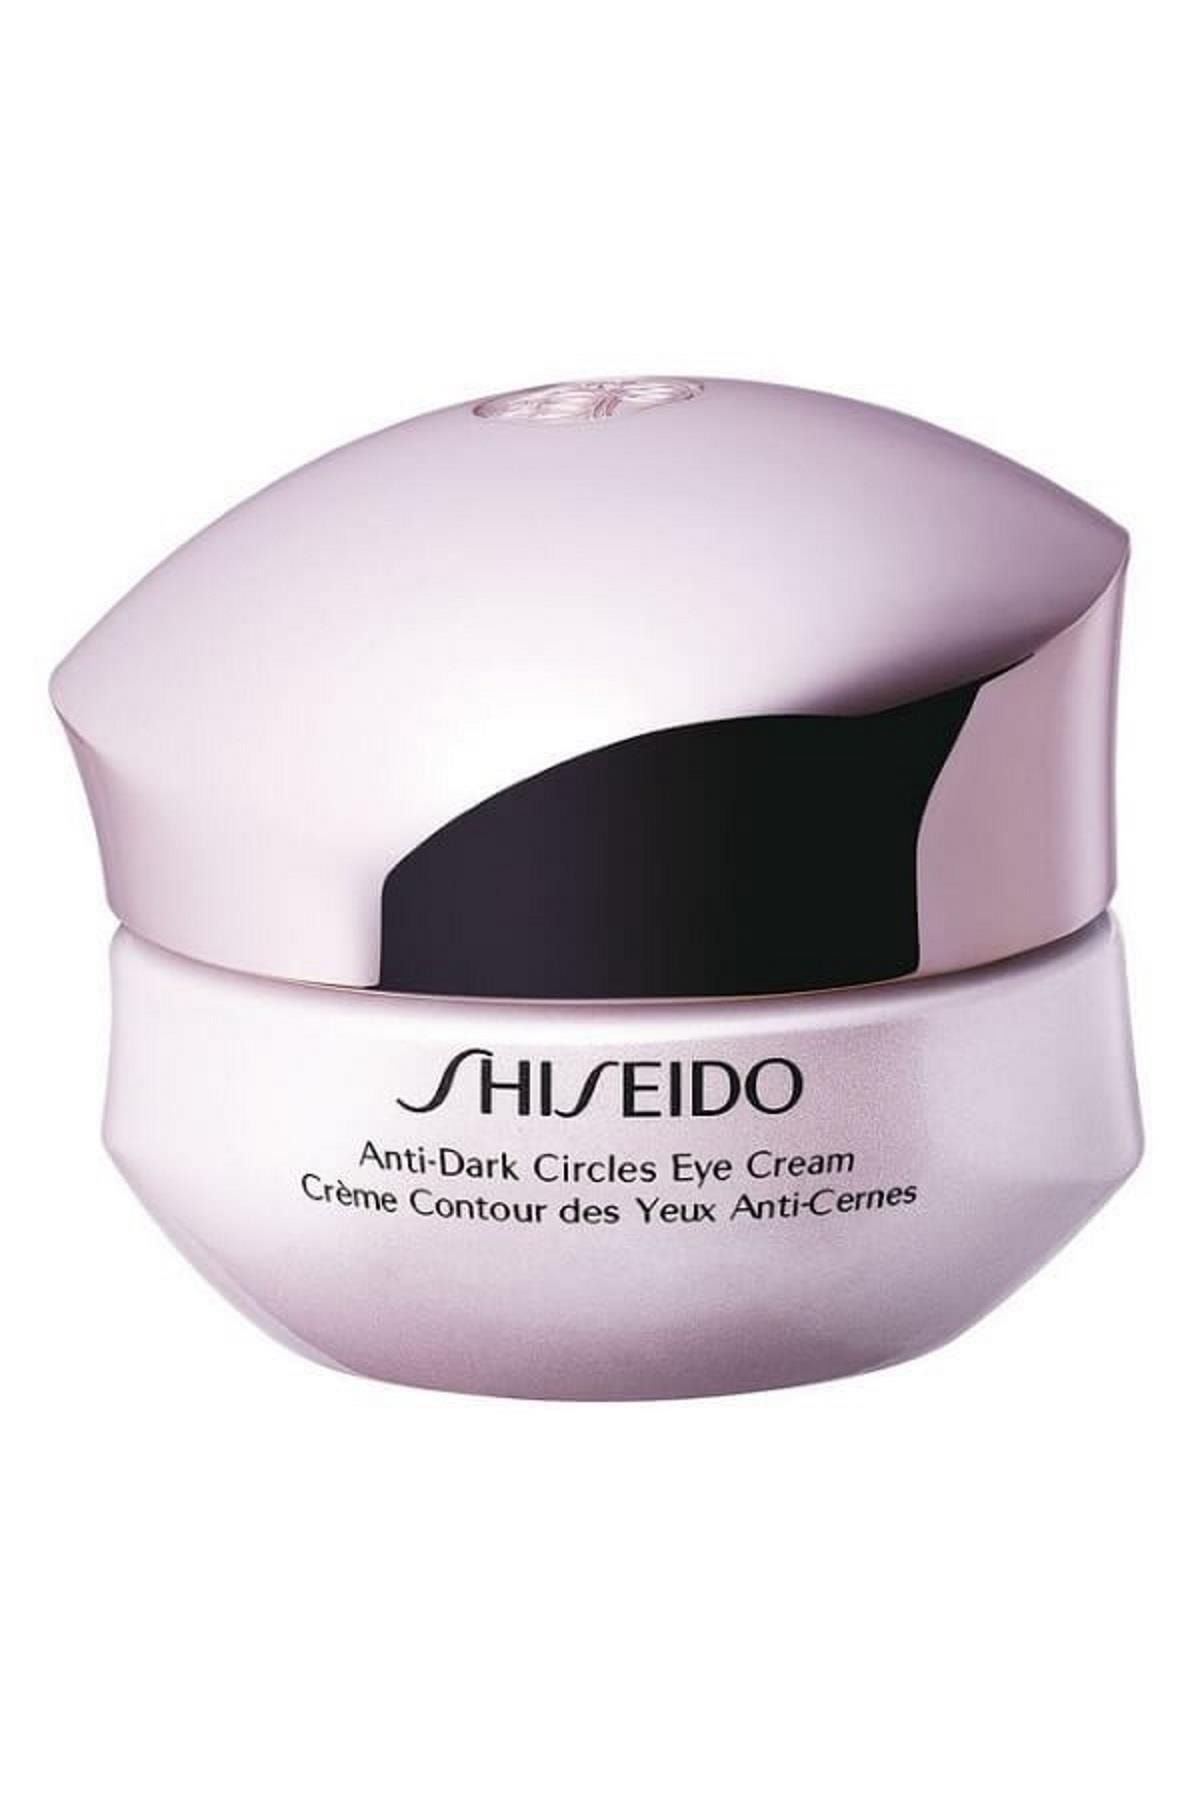 Shiseido Göz Çevresi Bakım Kremi - Anti Dark Circles Eye Cream 15 ml 729238104396